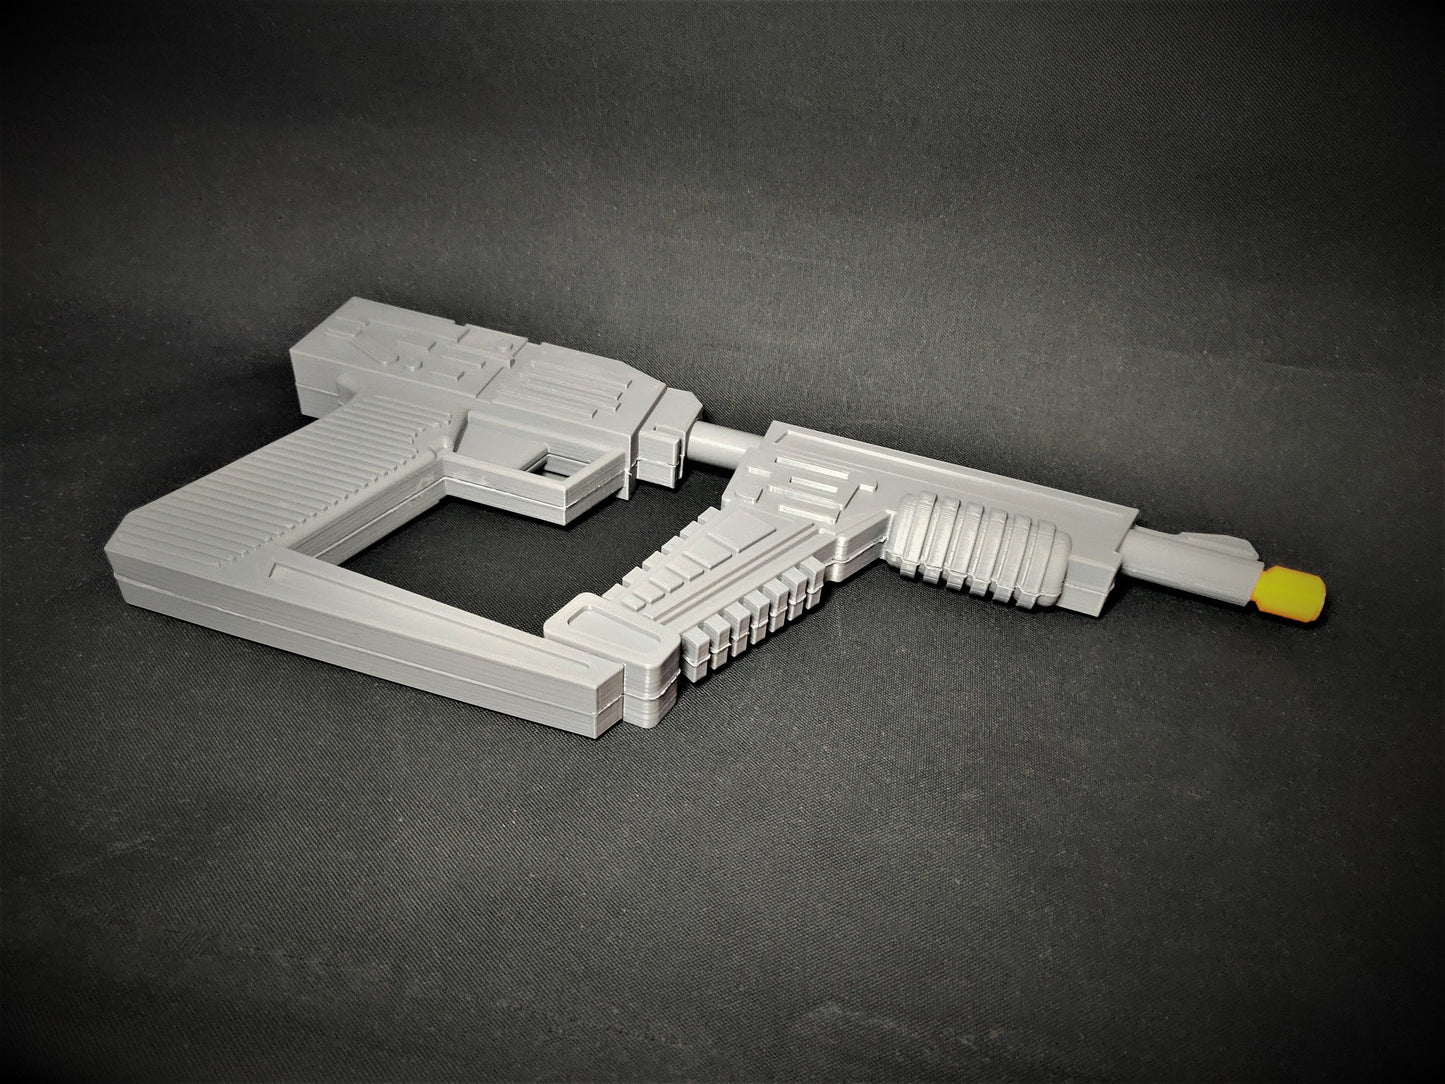 V-LASER - Sci-Fi Blaster - 3D Printed Replica